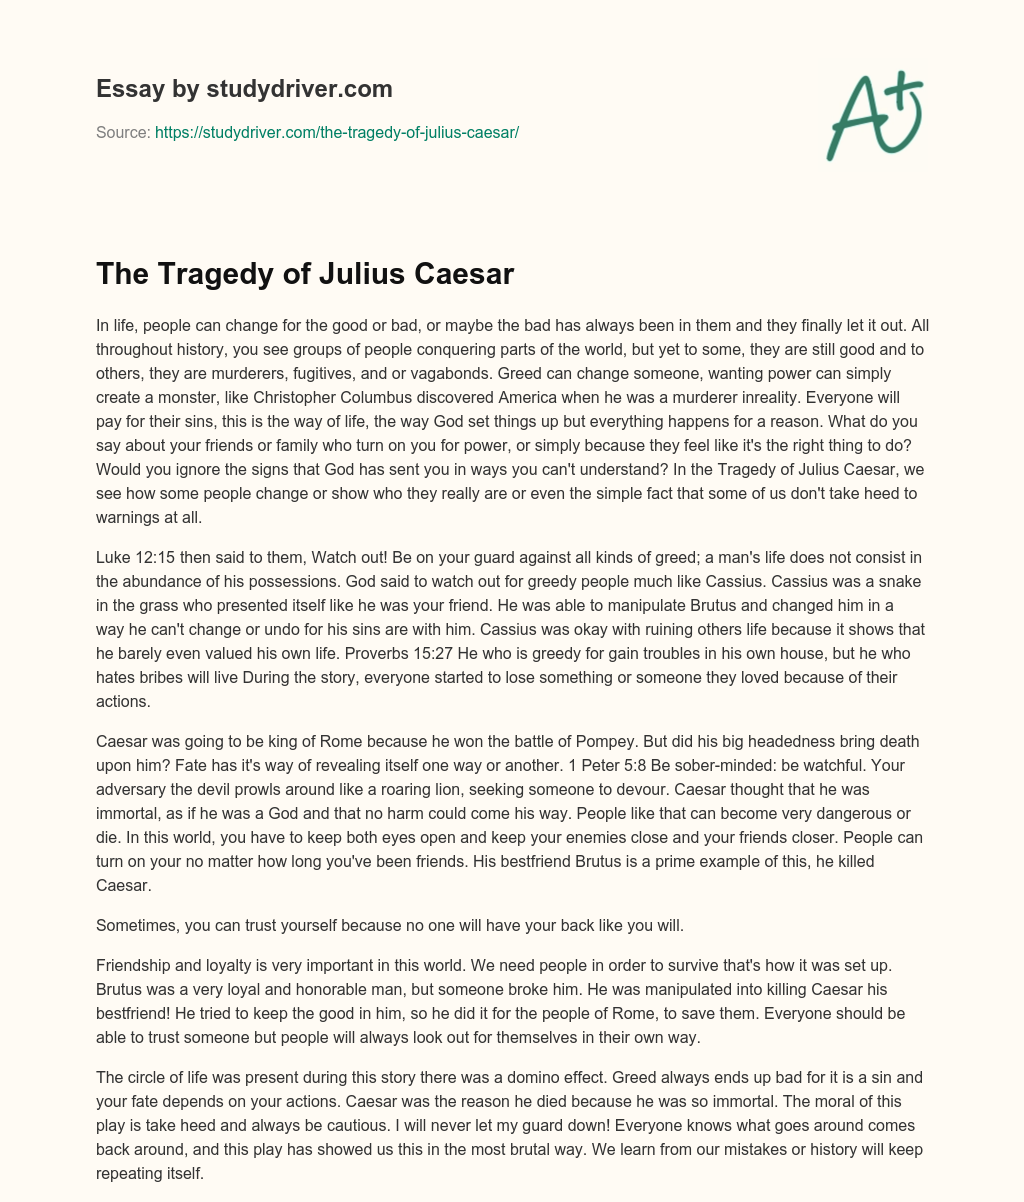 The Tragedy of Julius Caesar essay